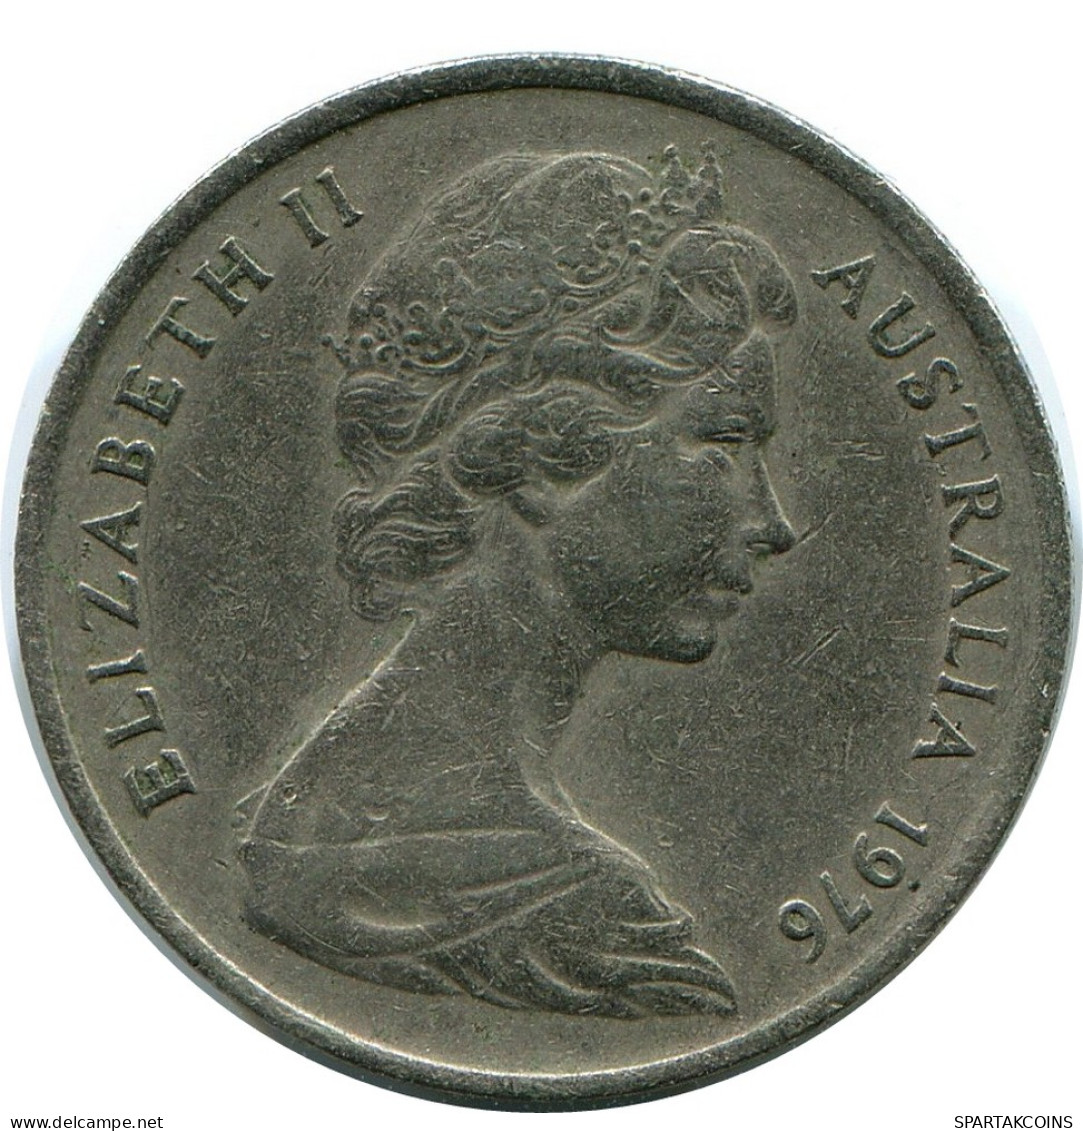 5 CENTS 1976 AUSTRALIA Coin #AR907.U - 5 Cents